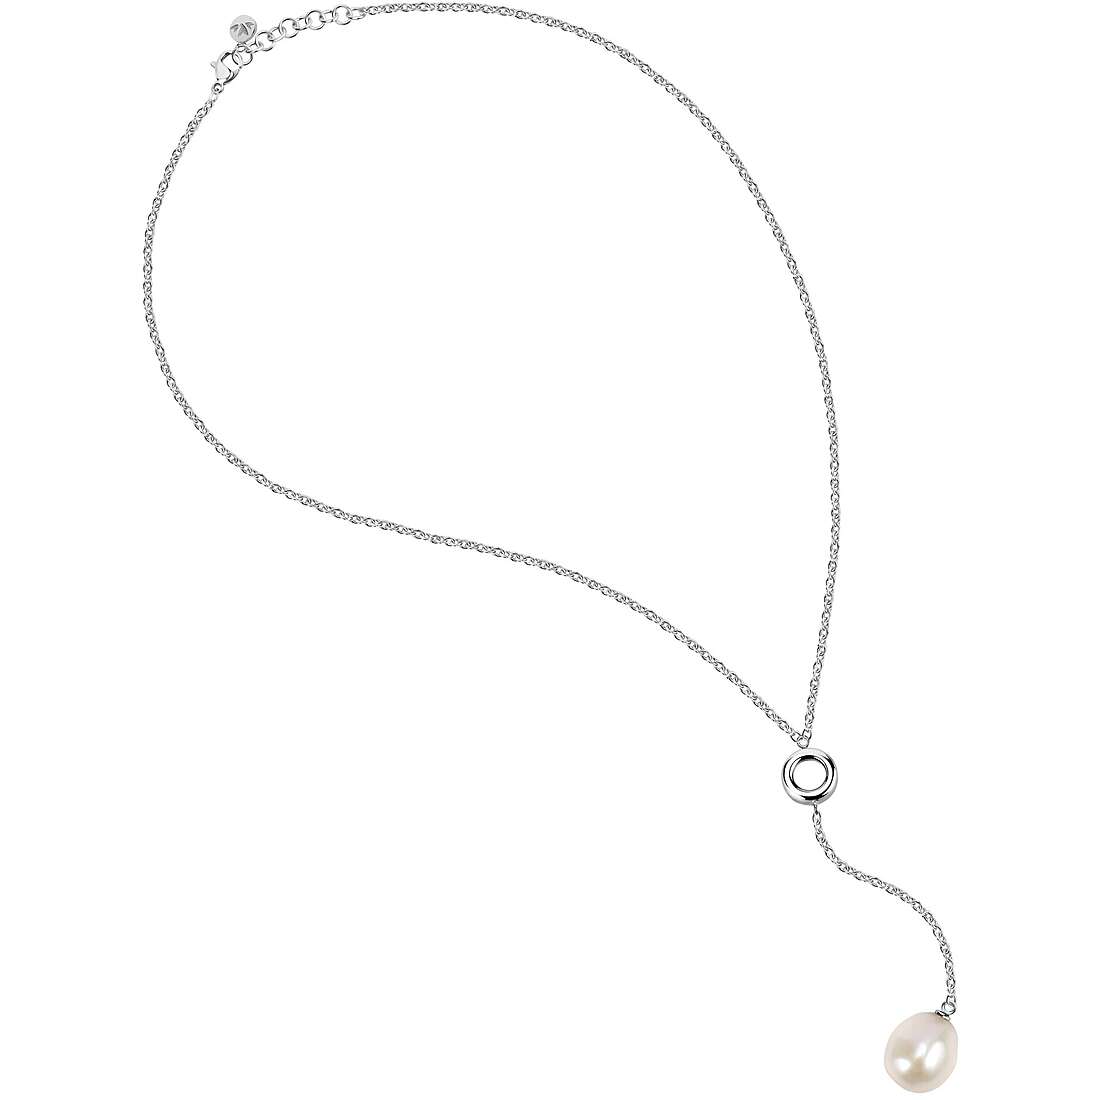 Halskette mit Perlen Morellato Oriente für frau SARI09